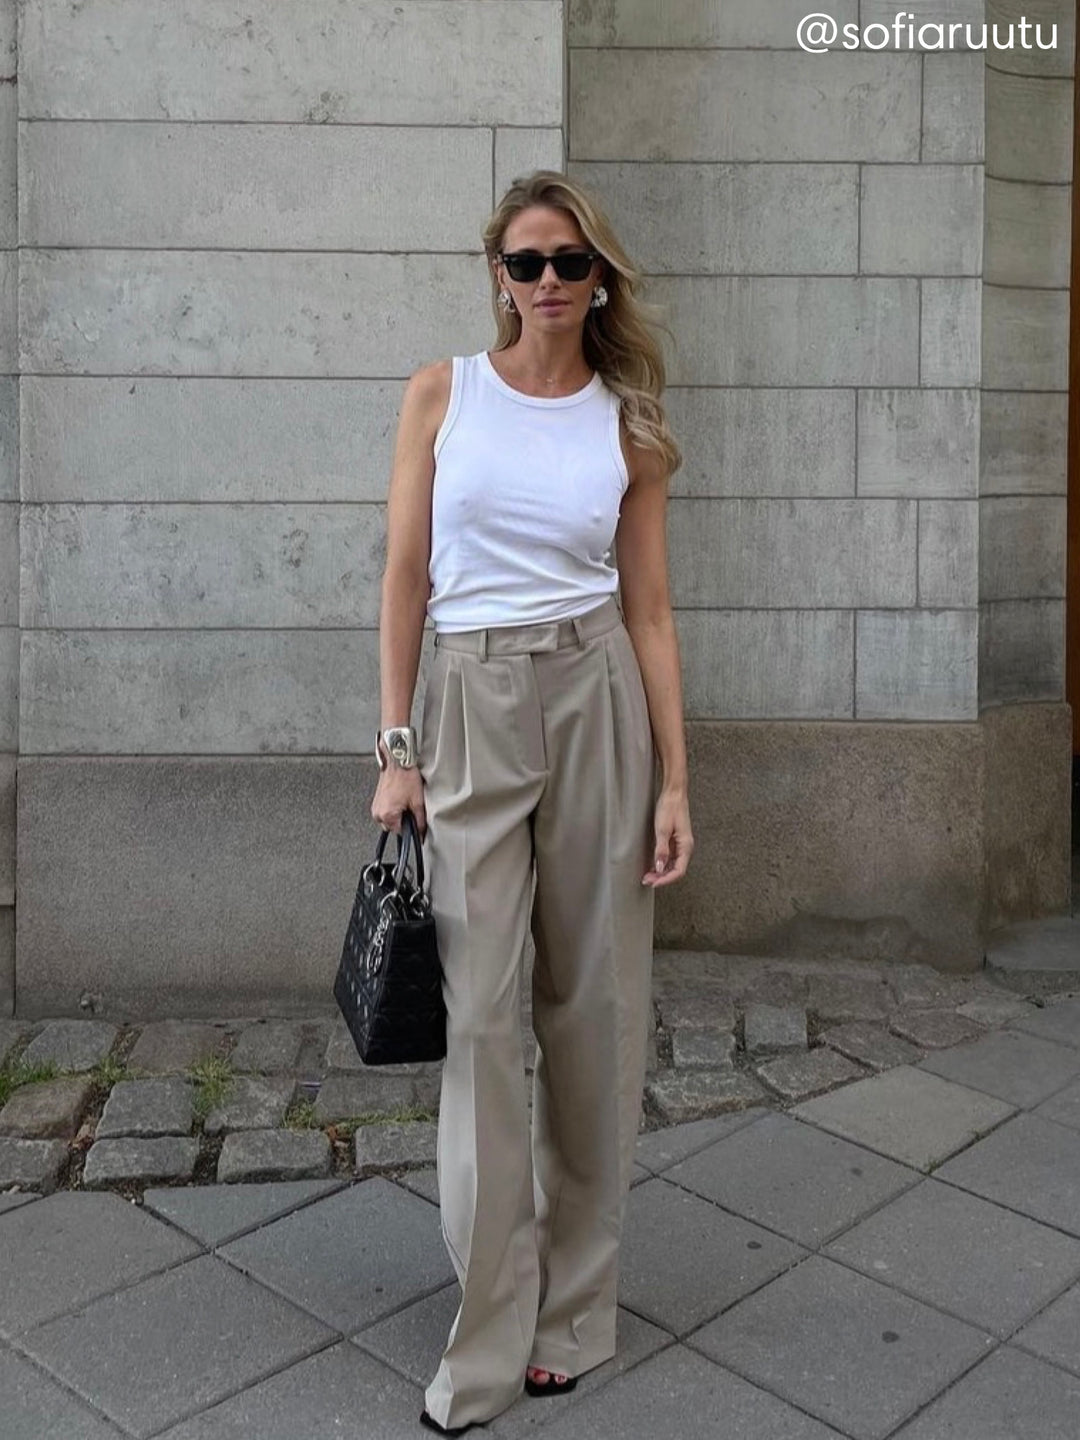 women - pants - wool - high waist - pleats - pockets - beige